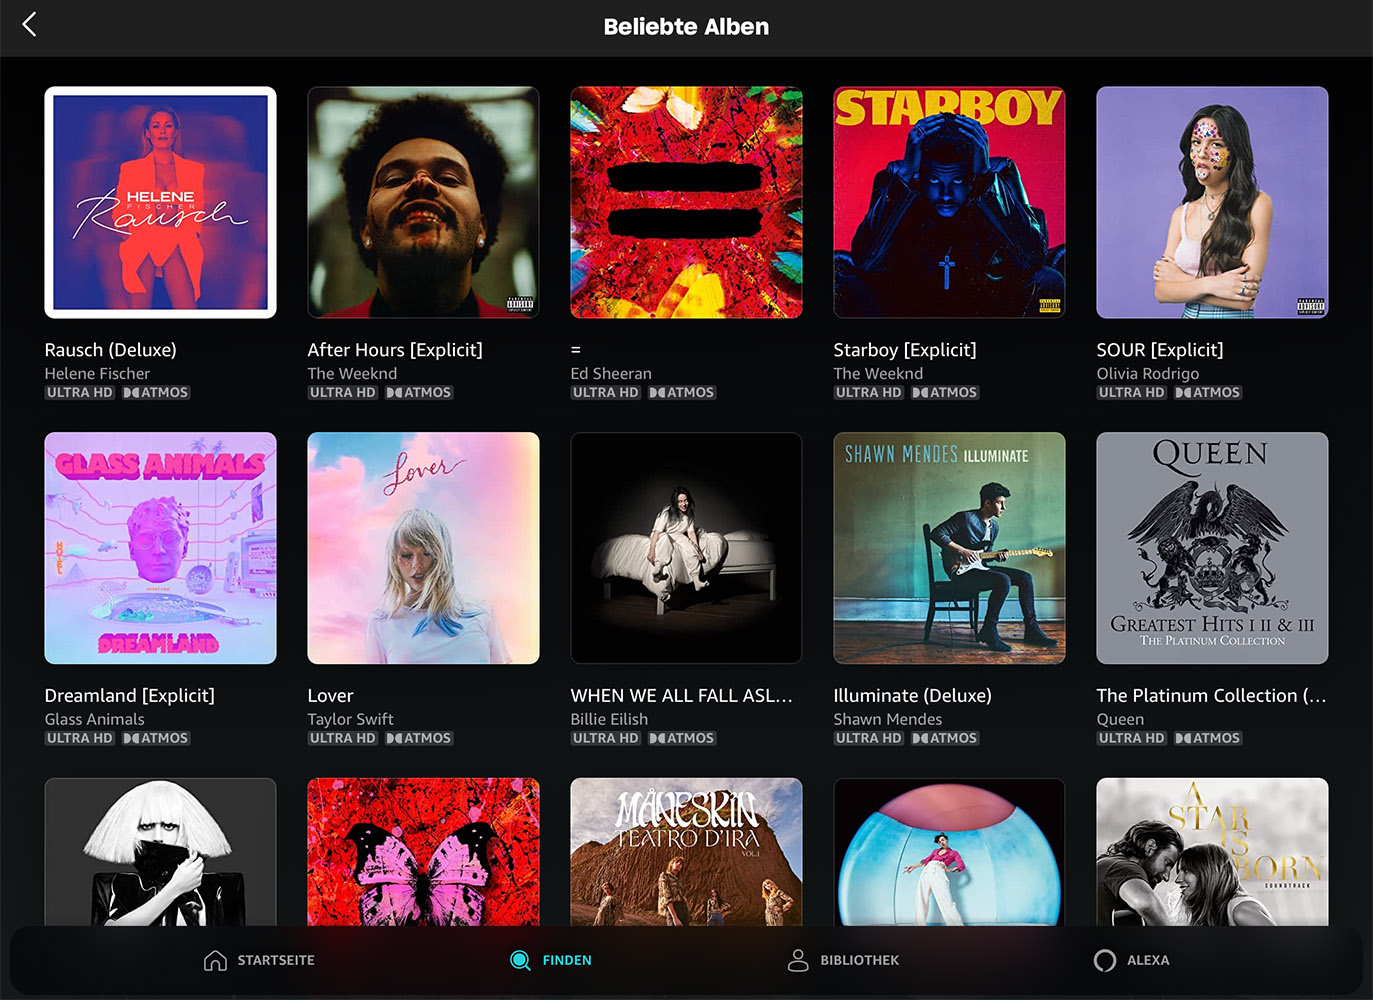 Beliebte Alben in Dolby Atmos bei Amazon